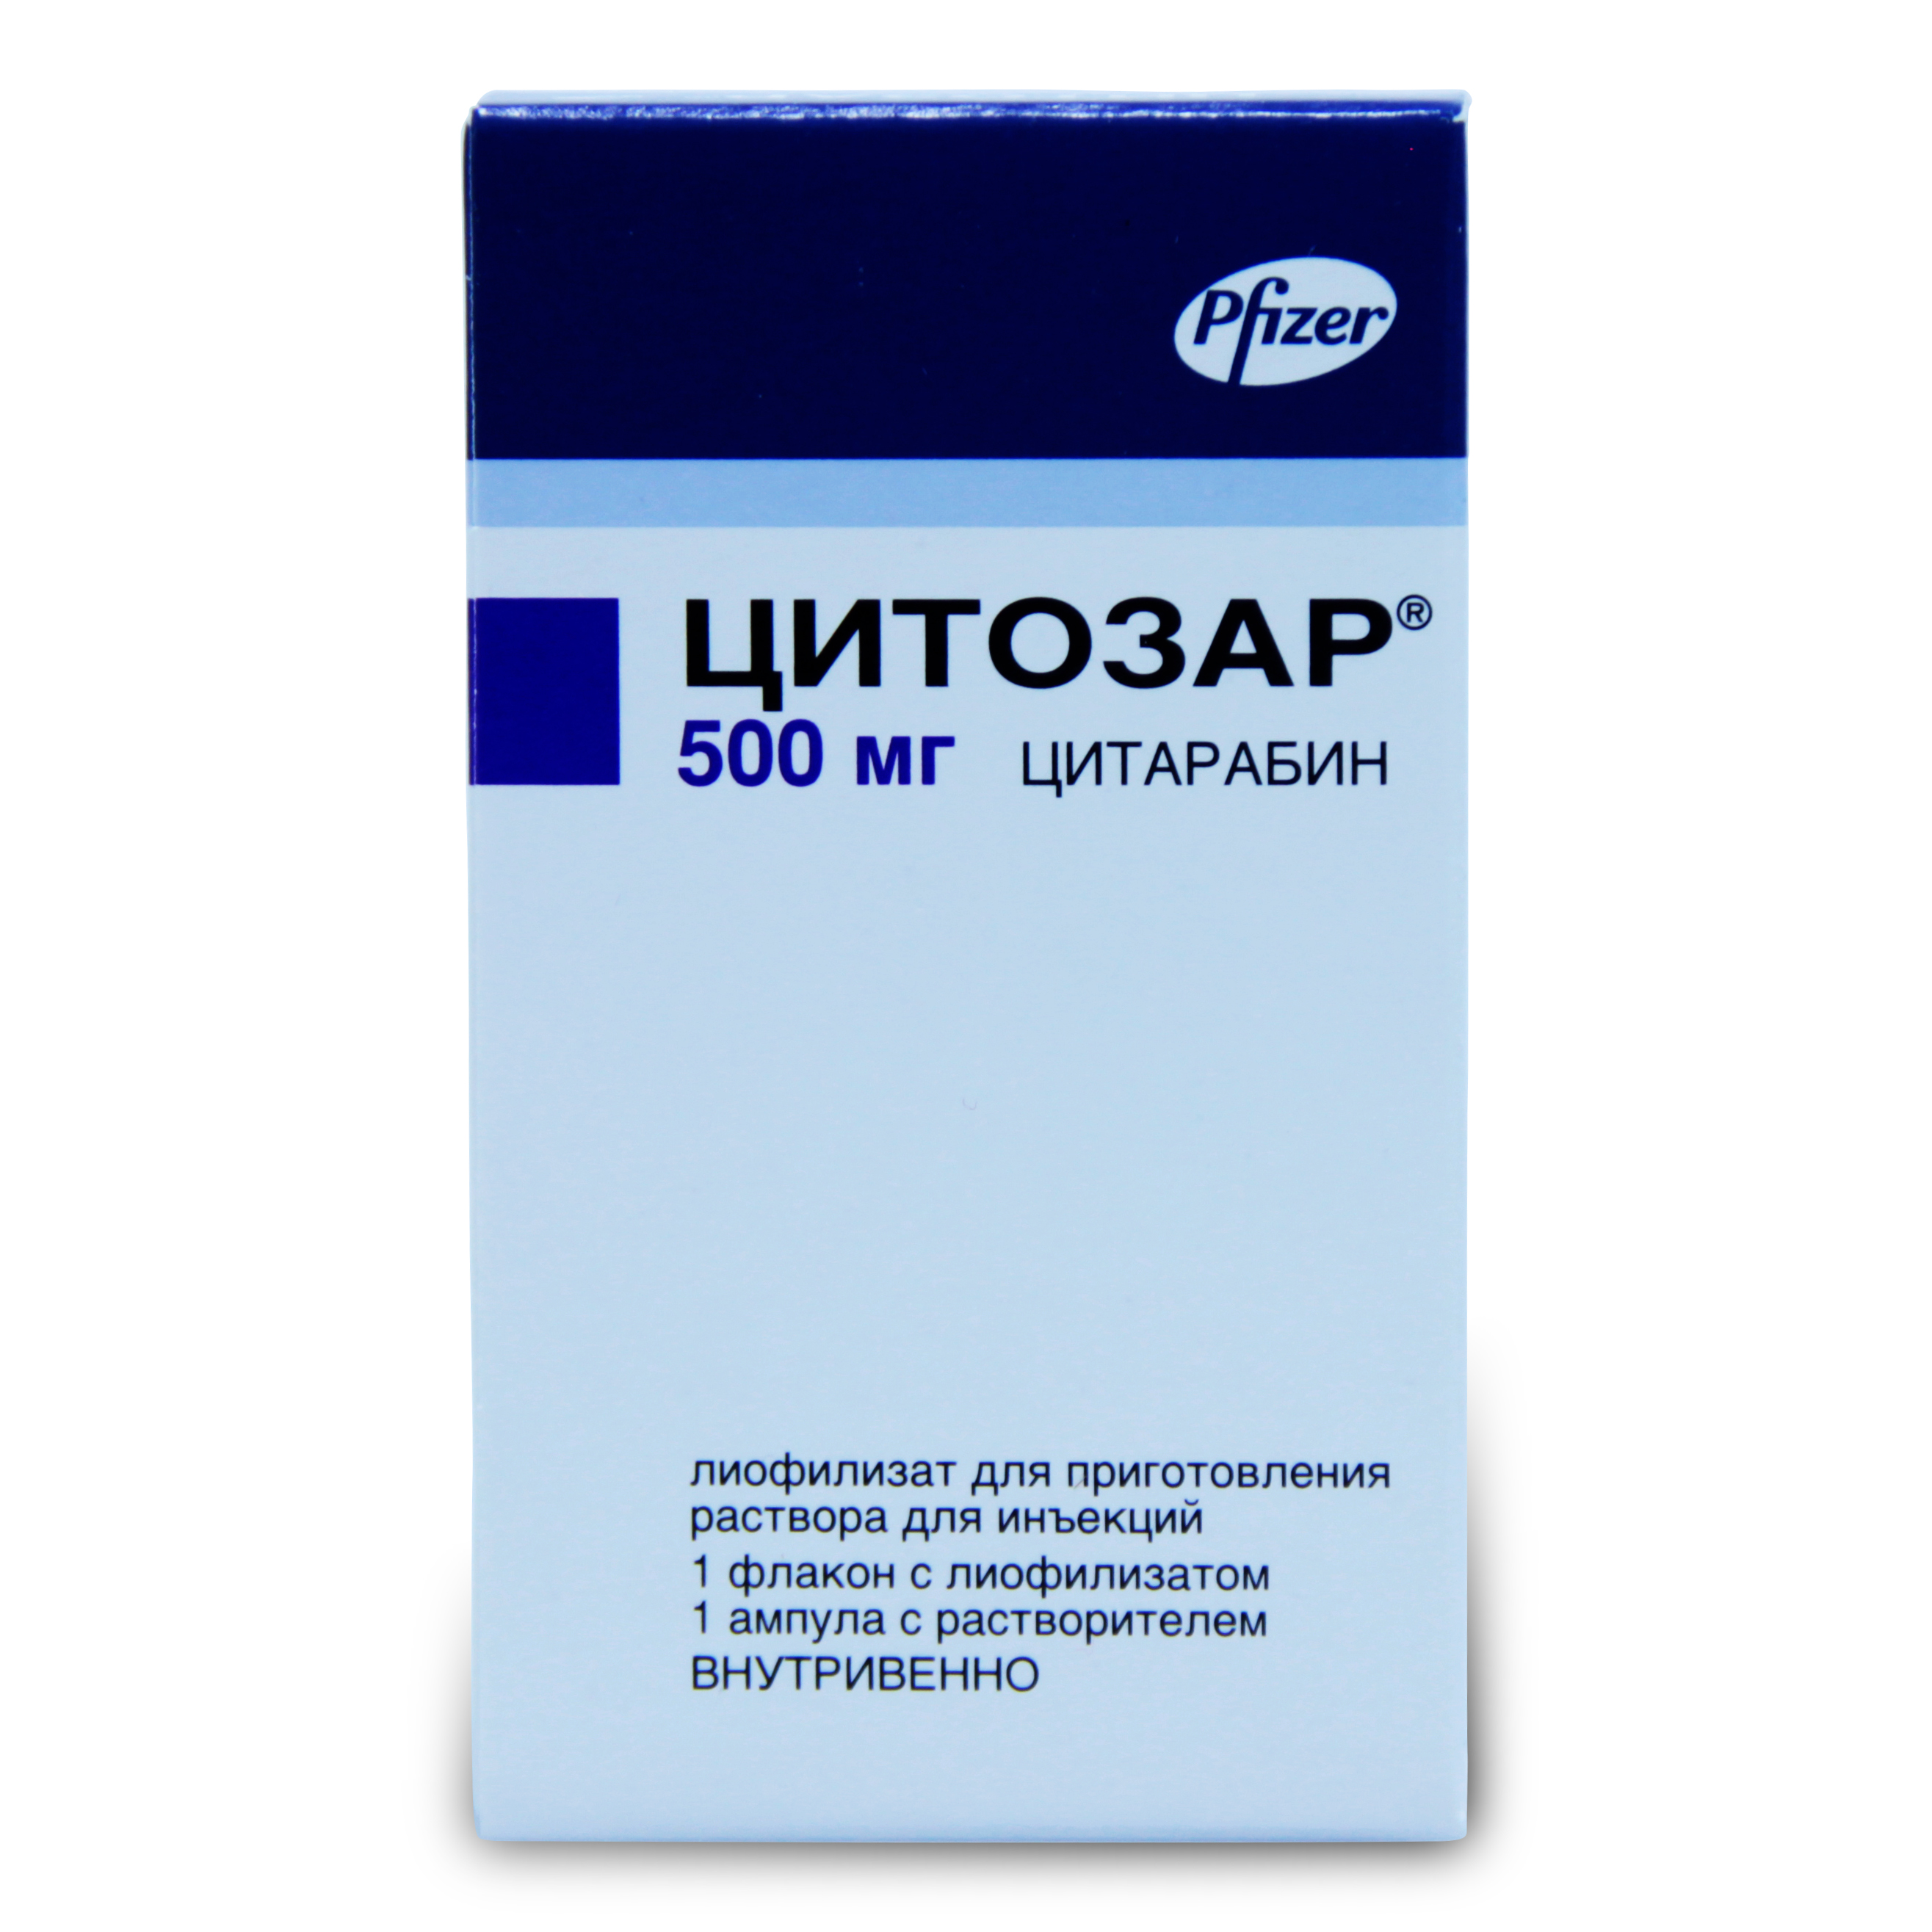 Цитозар лиофилизат для приготовления раствора для инъекций 500 мг флакон 1 шт. в комплекте с растворителем